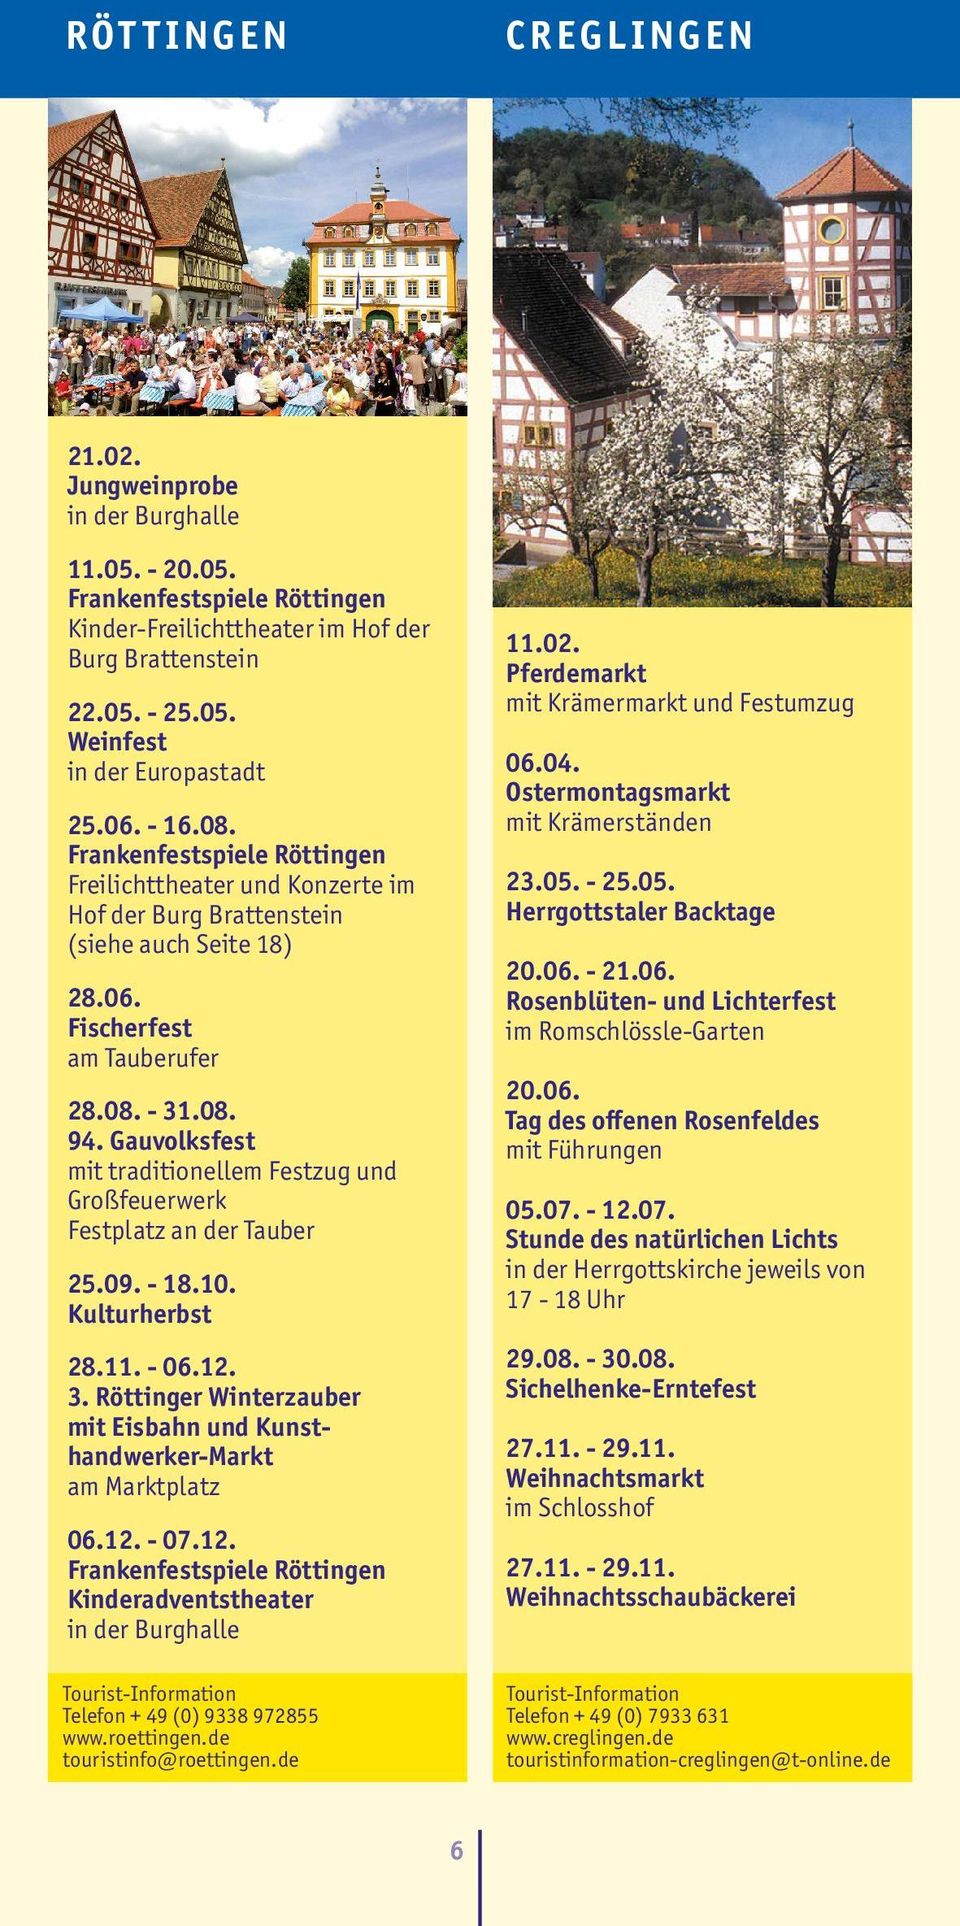 Gauvolksfest mit traditionellem Festzug und Großfeuerwerk Festplatz an der Tauber 25.09. - 18.10. Kulturherbst 28.11. - 06.12. 3.